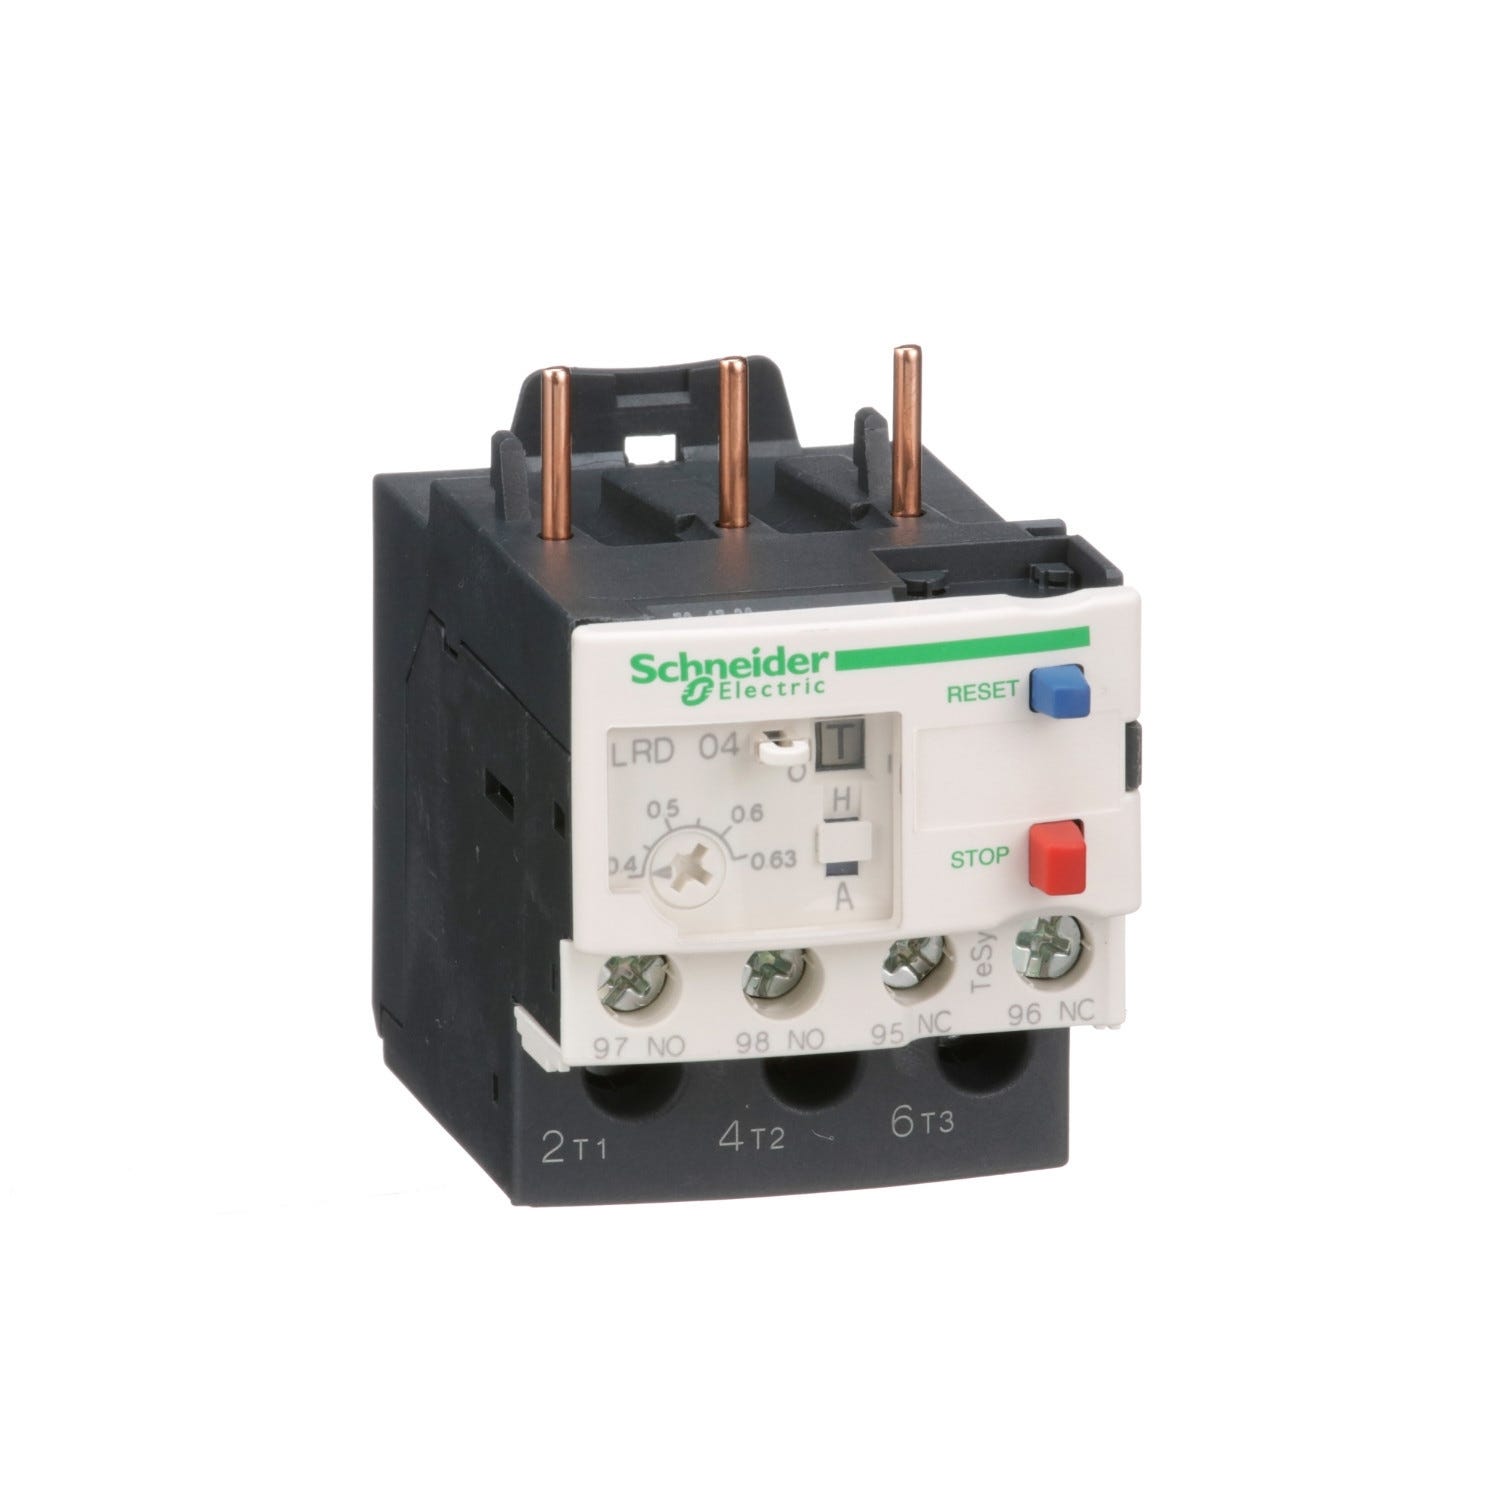 relais de protection thermique - pour contacteur tesys xxxxx - 0.40 à 0.63a - schneider electric lrd04 1